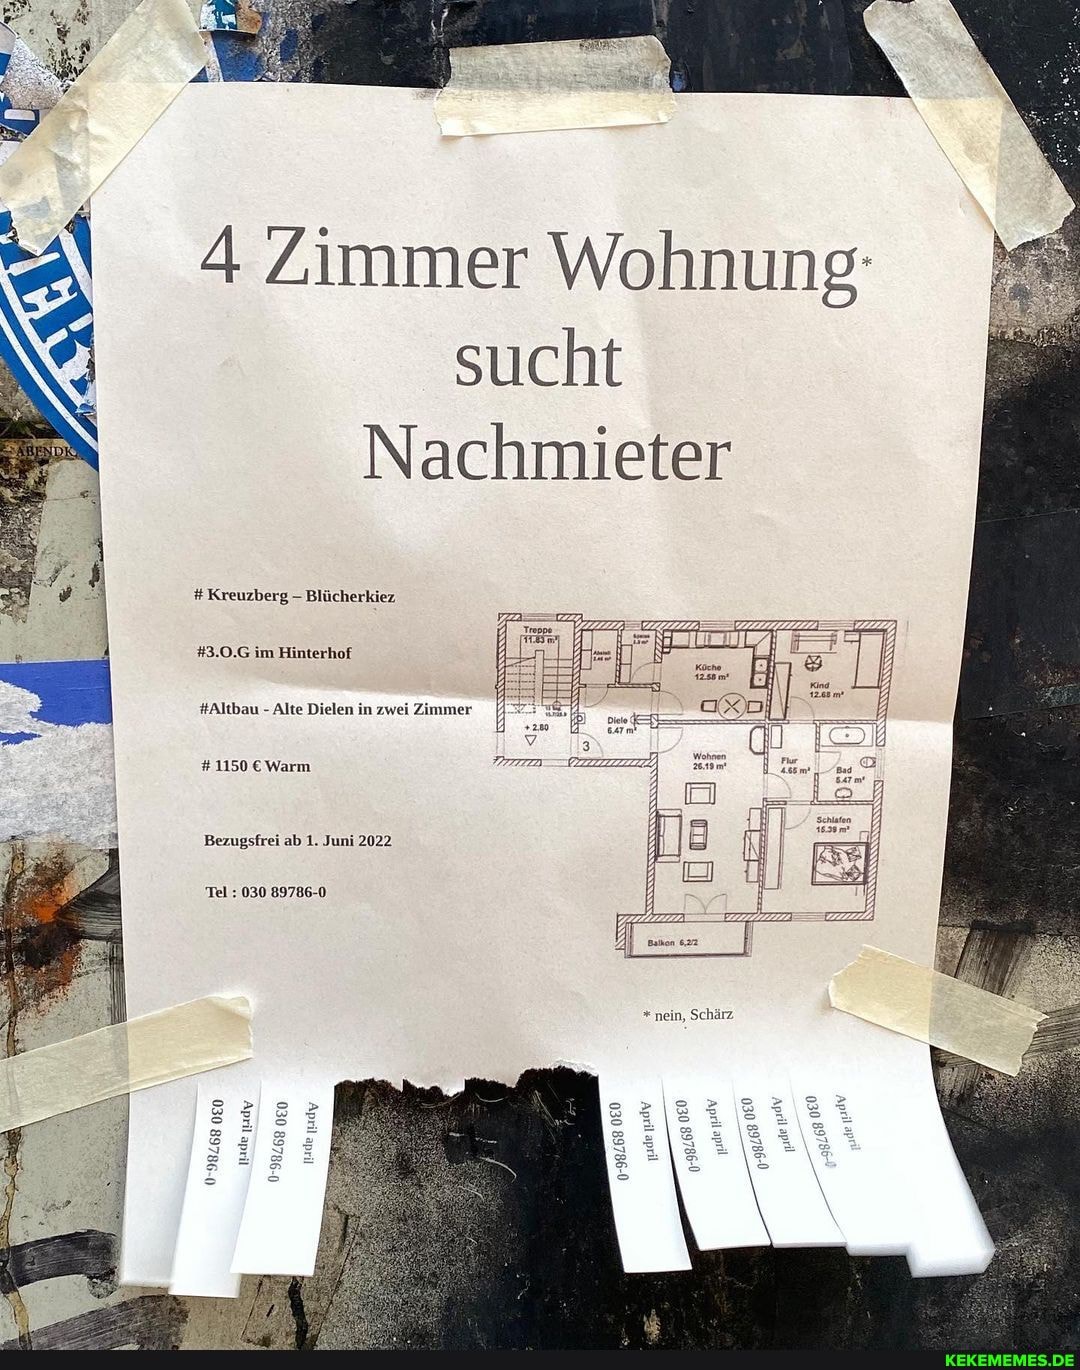 4 Zimmer Wohnung: sucht Nachmieter # Kreuzberg Blücherkiez #3.0.G im Hinterhof 